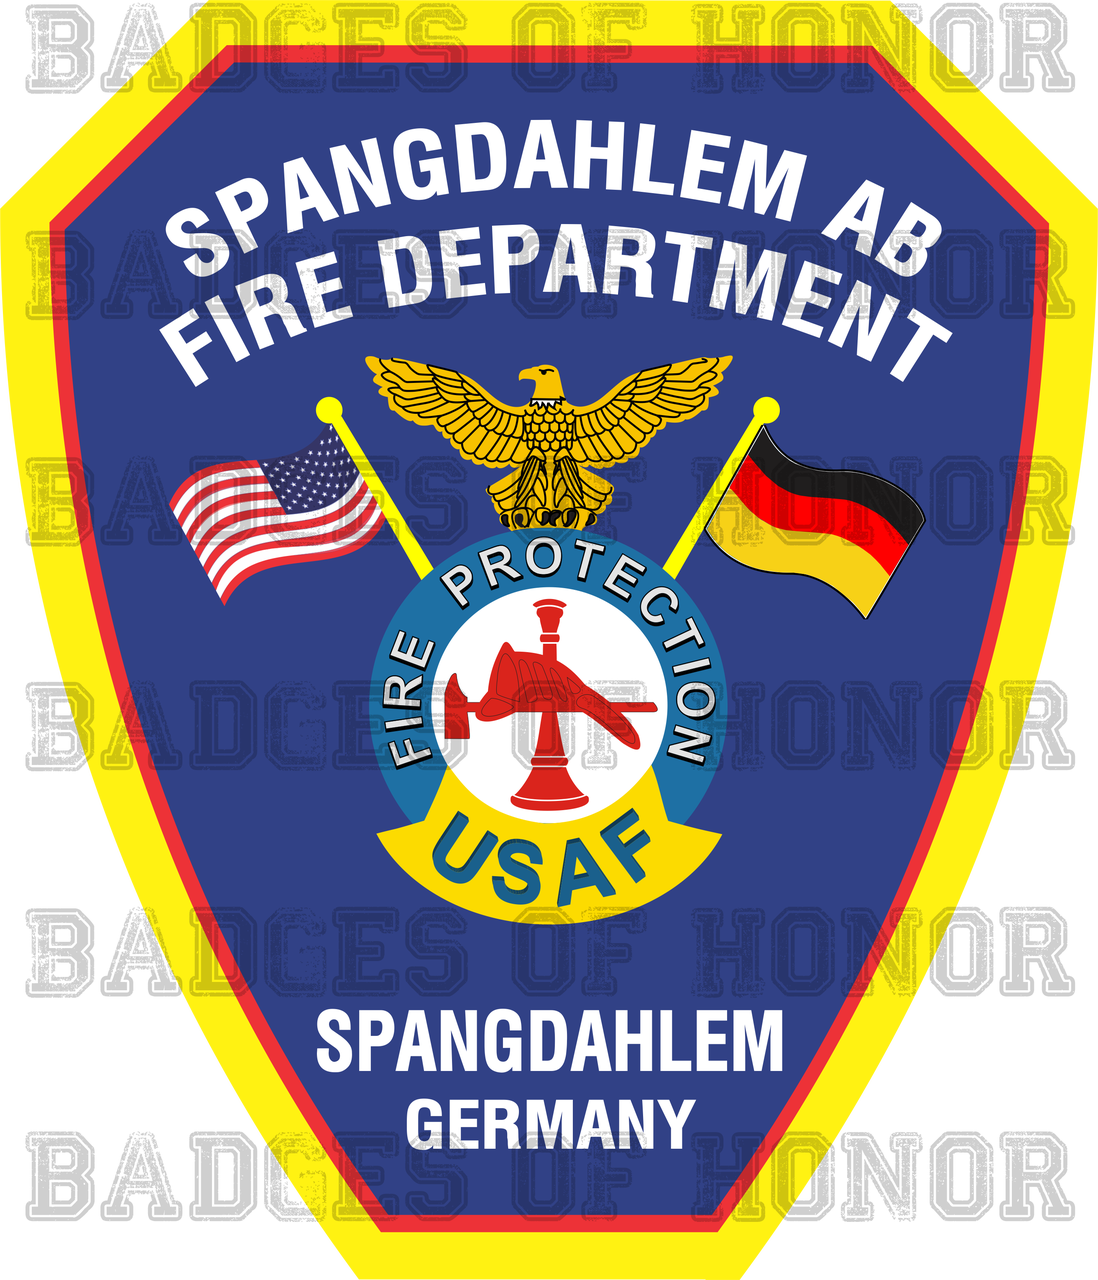 Spangdahlem Air Base Fire Department Shirt v2